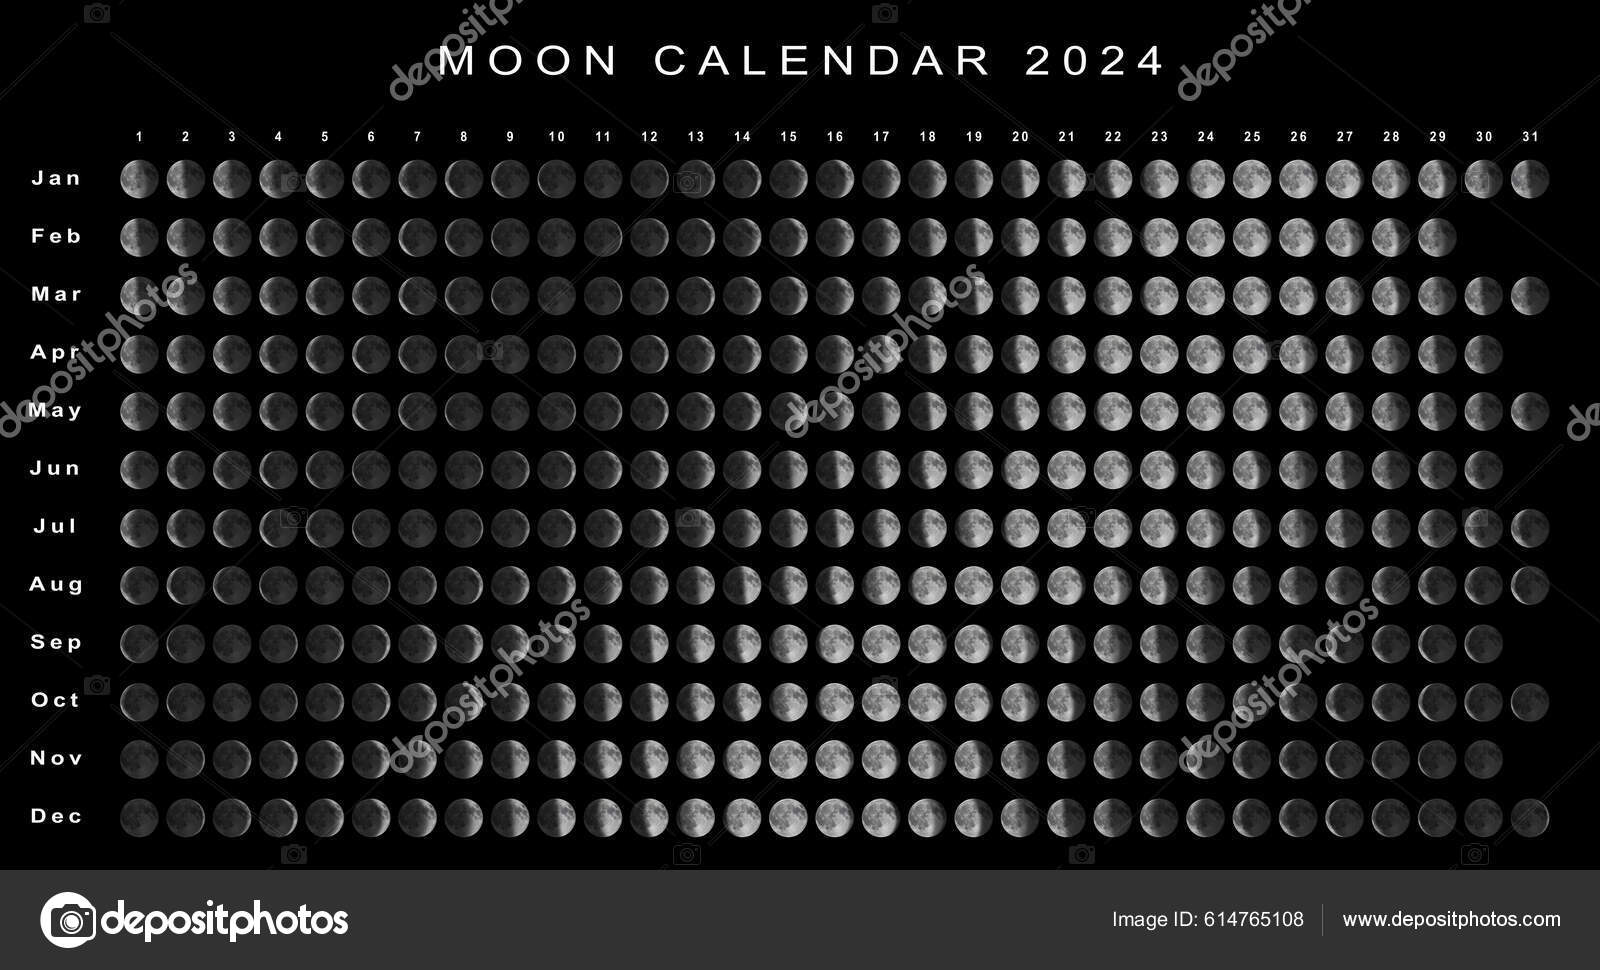 Calendrier lunaire 2024 🌙 à consulter et imprimer